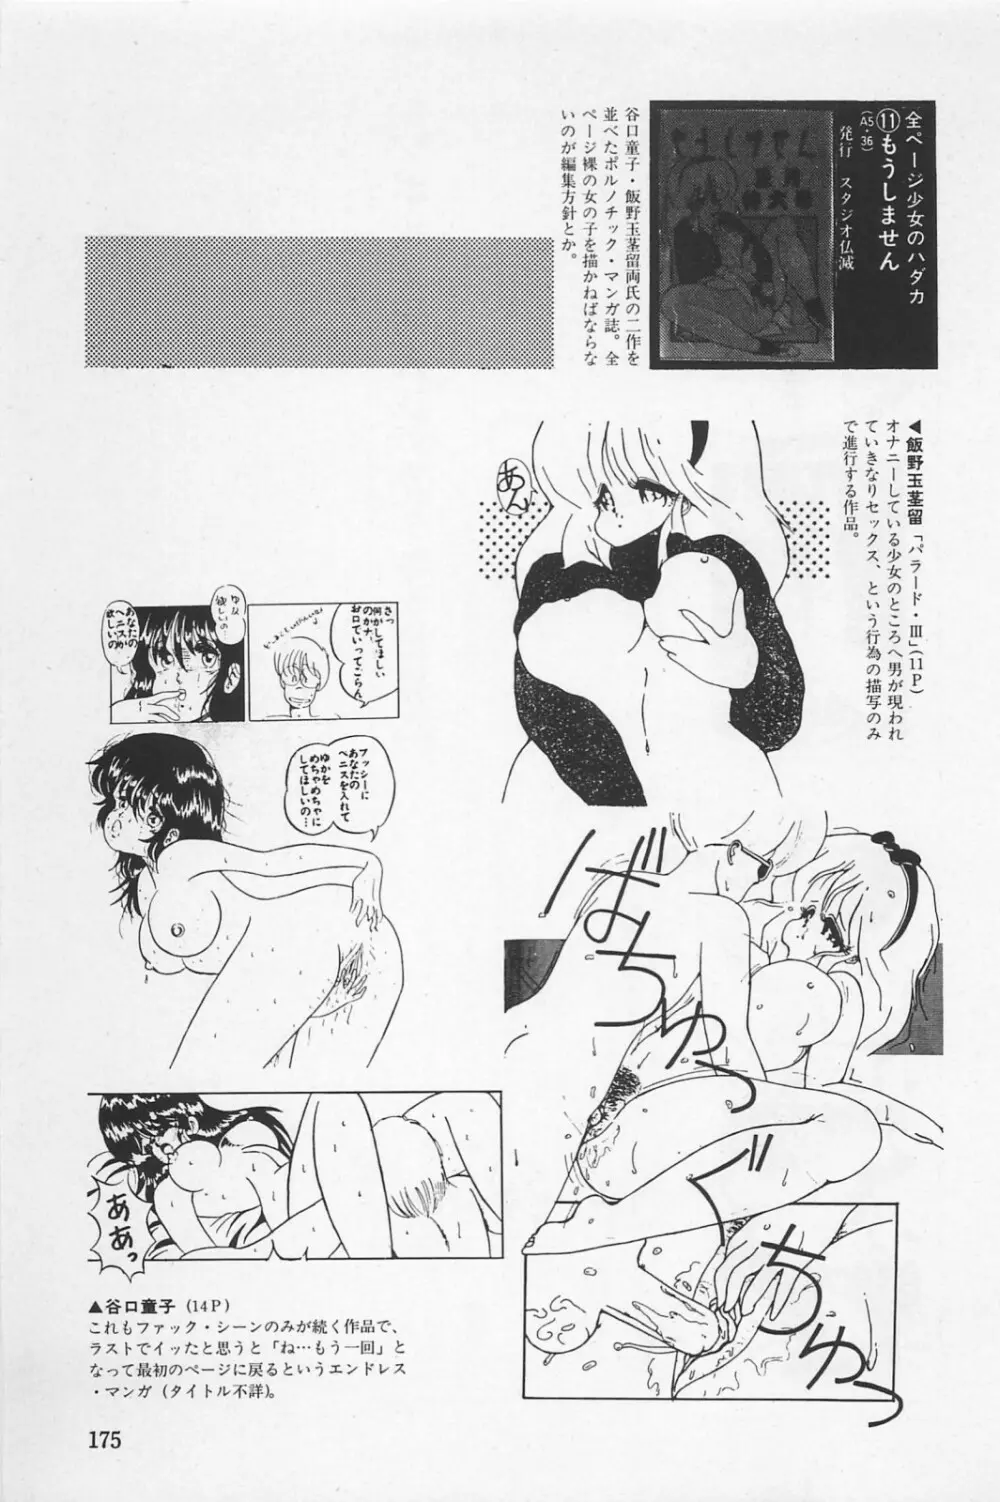 美少女症候群 1985 177ページ